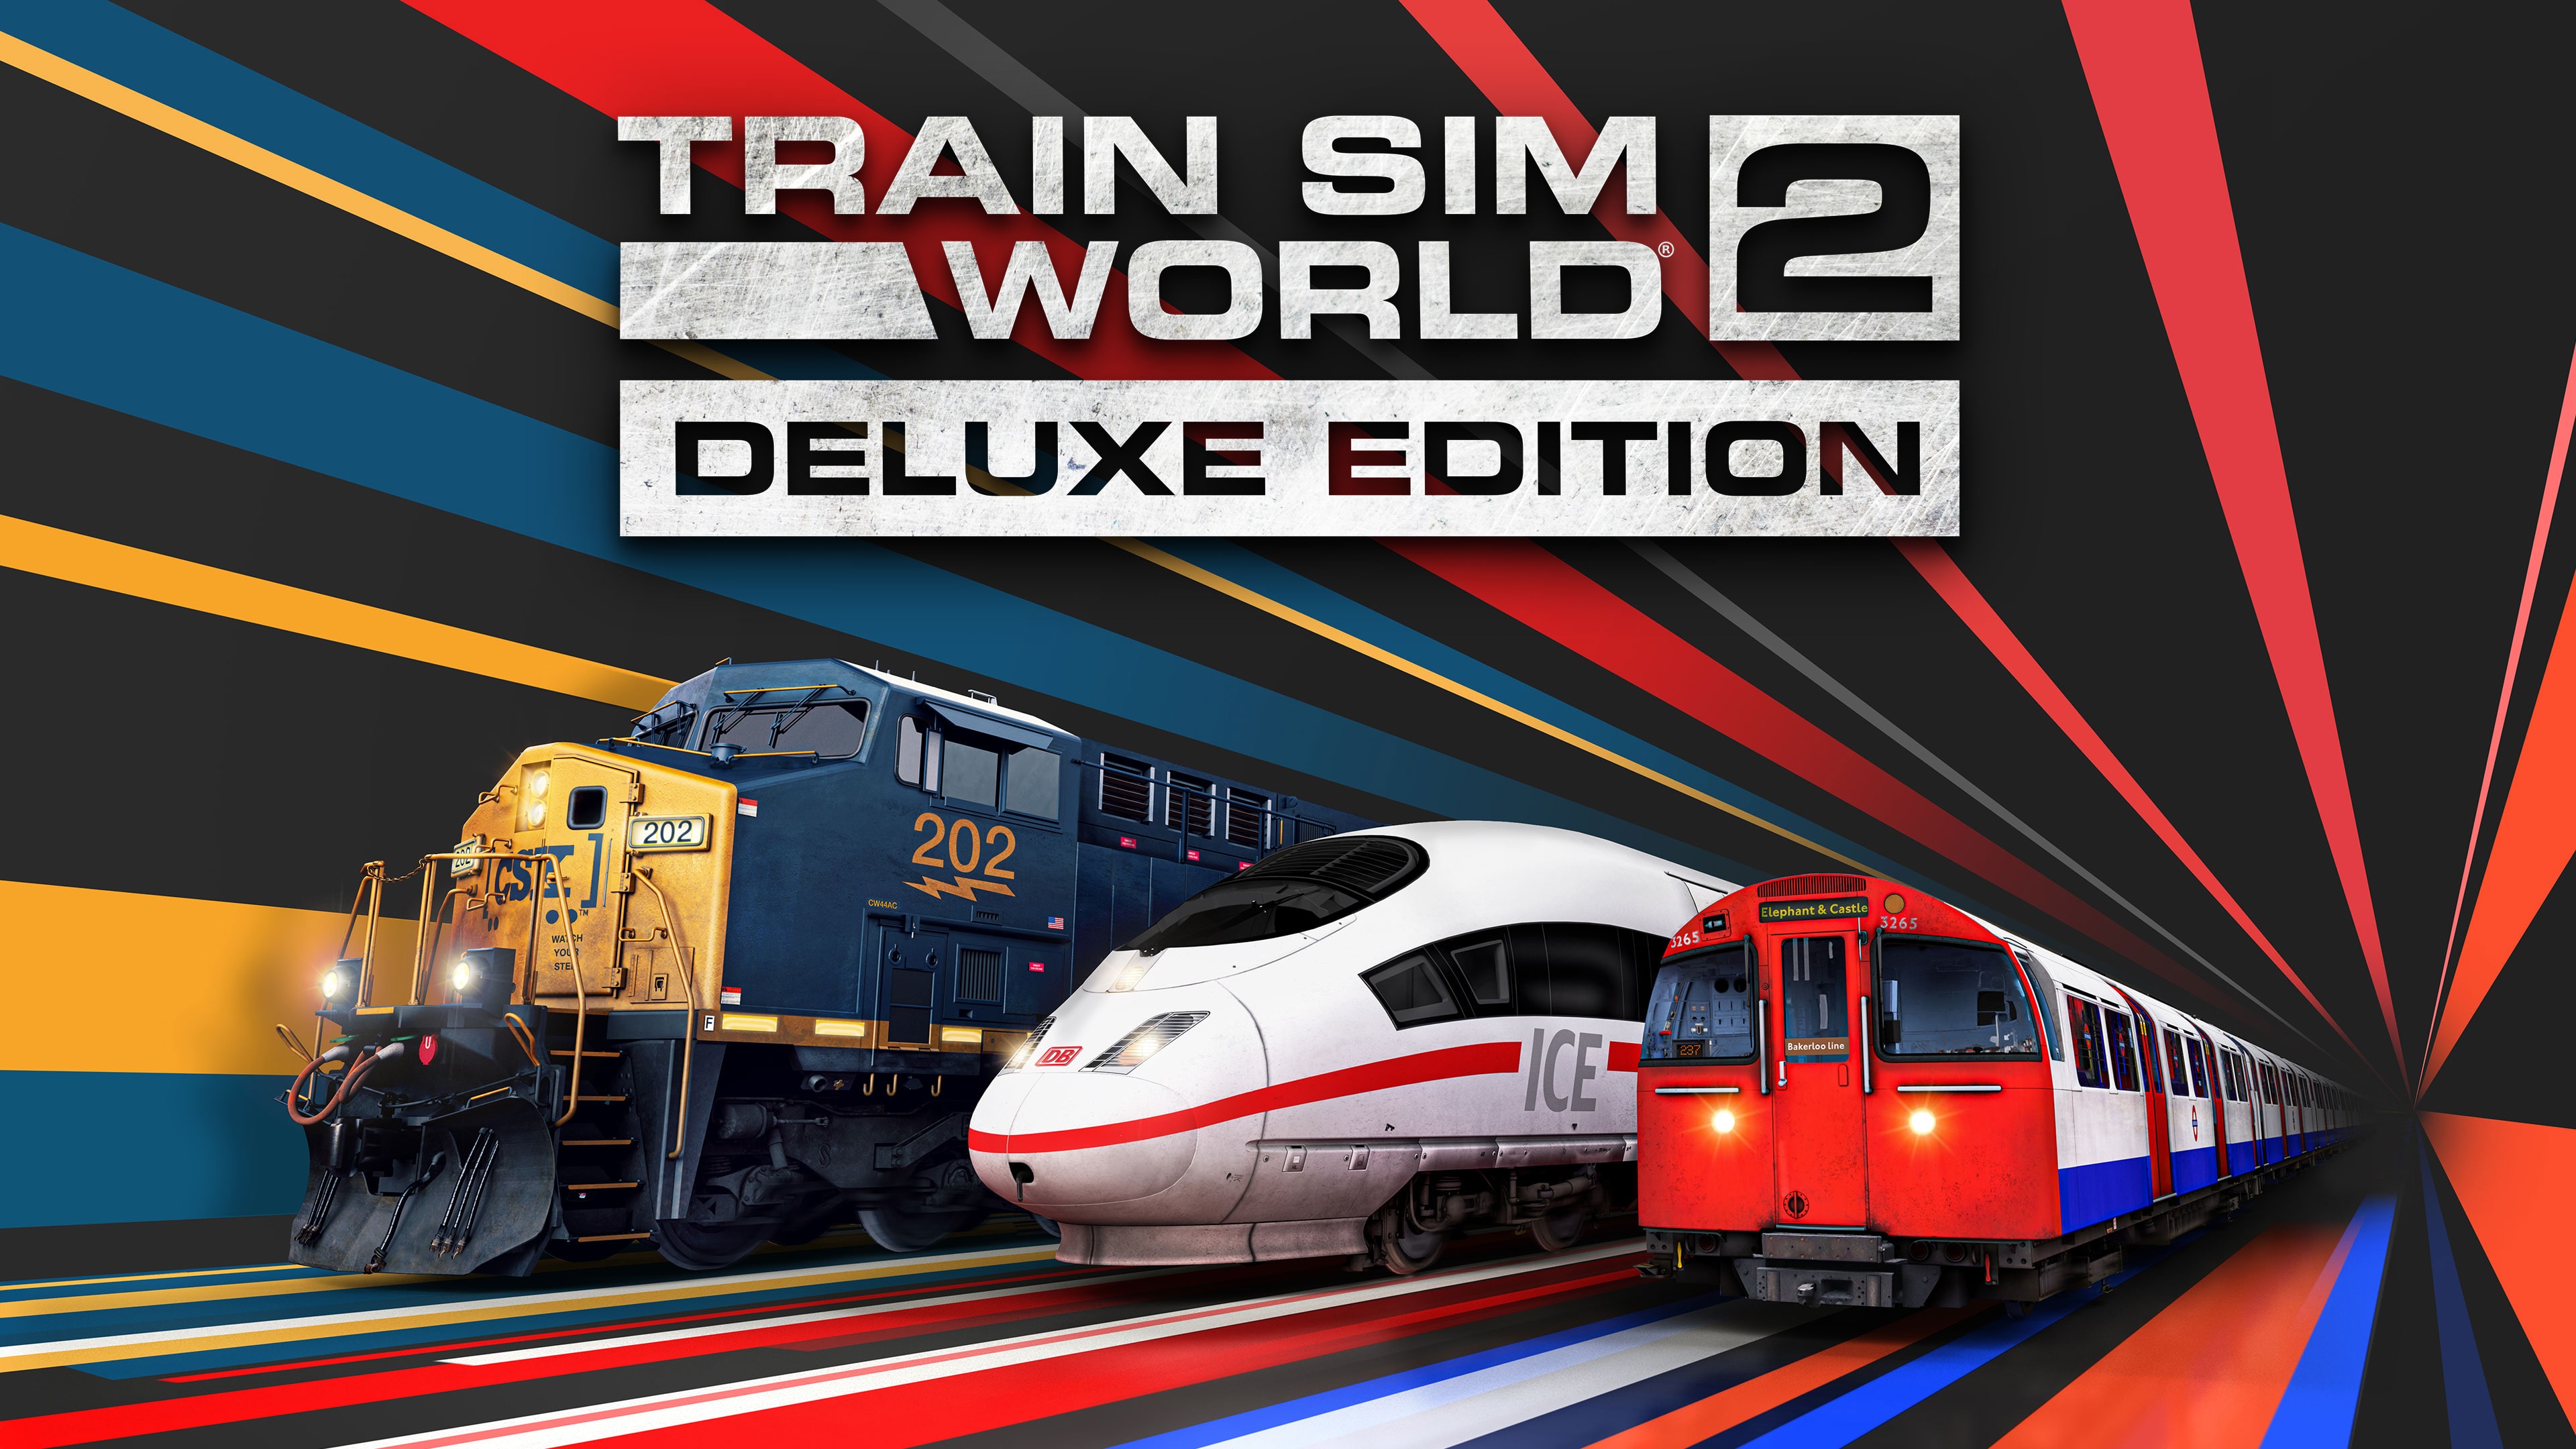 Train Sim World 2 Steam Trains